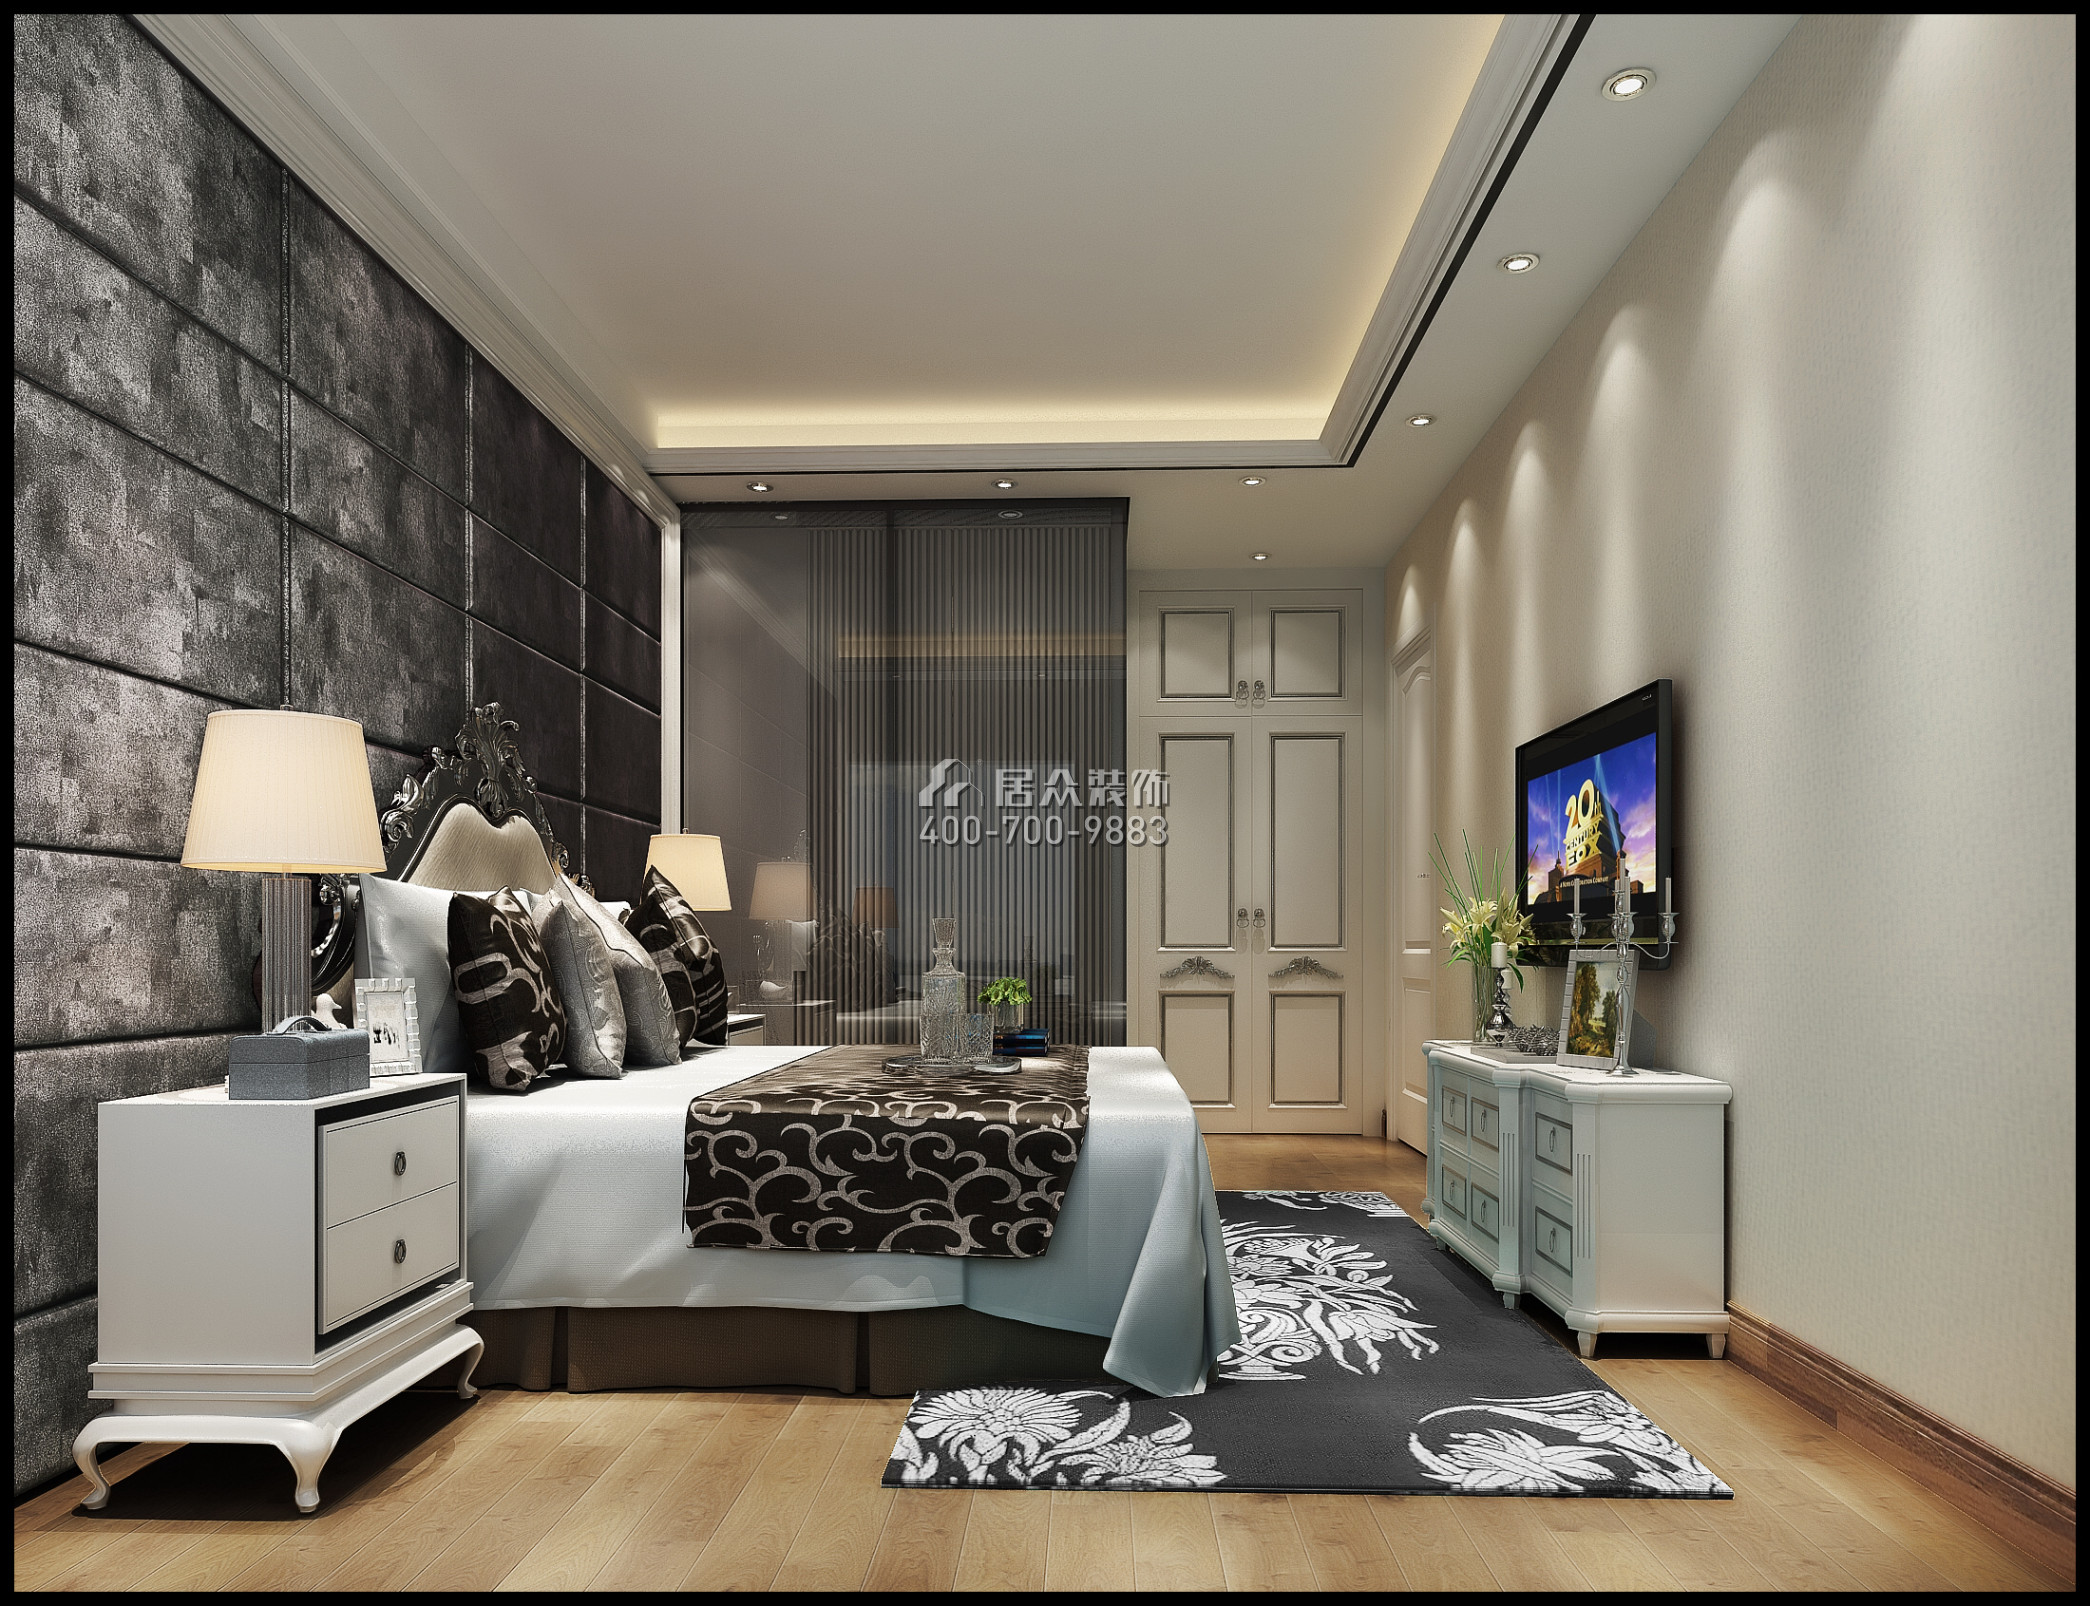 富力东山新天地120平方米欧式风格平层户型卧室装修效果图